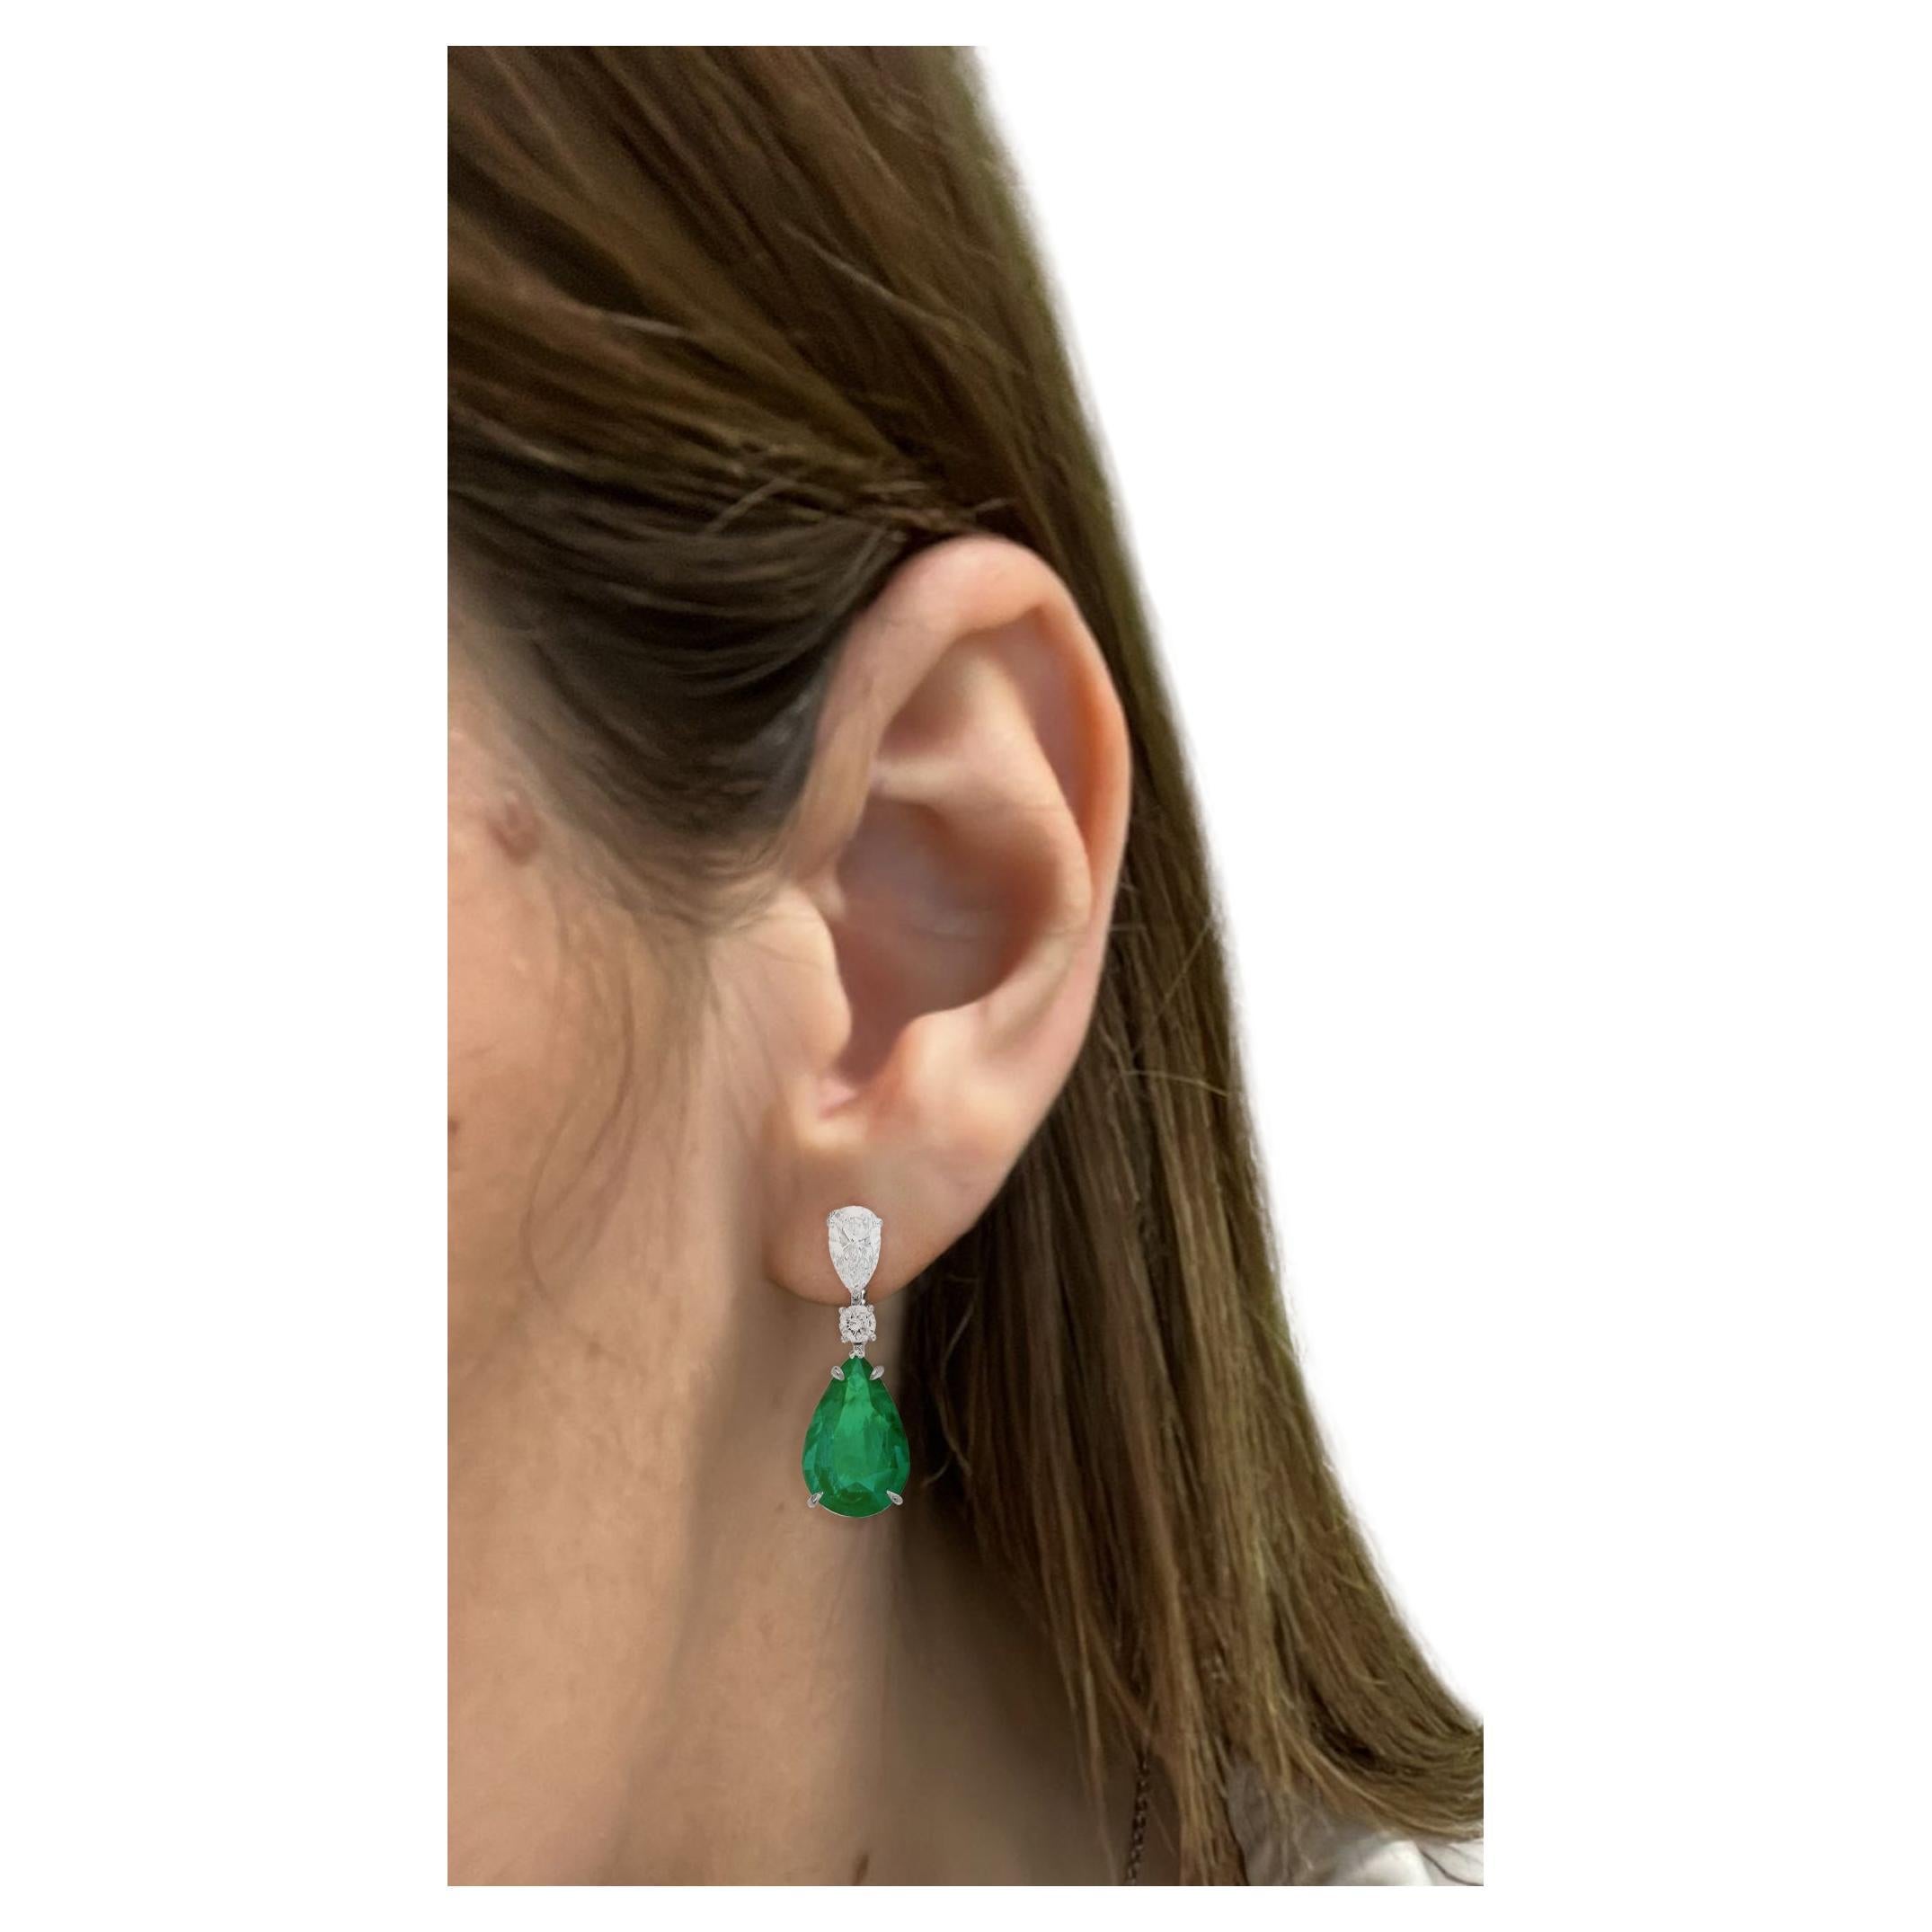 IGI ANTWERP Certified 13 Carat Pear Cut Emerald Diamond Dangle Earrings 